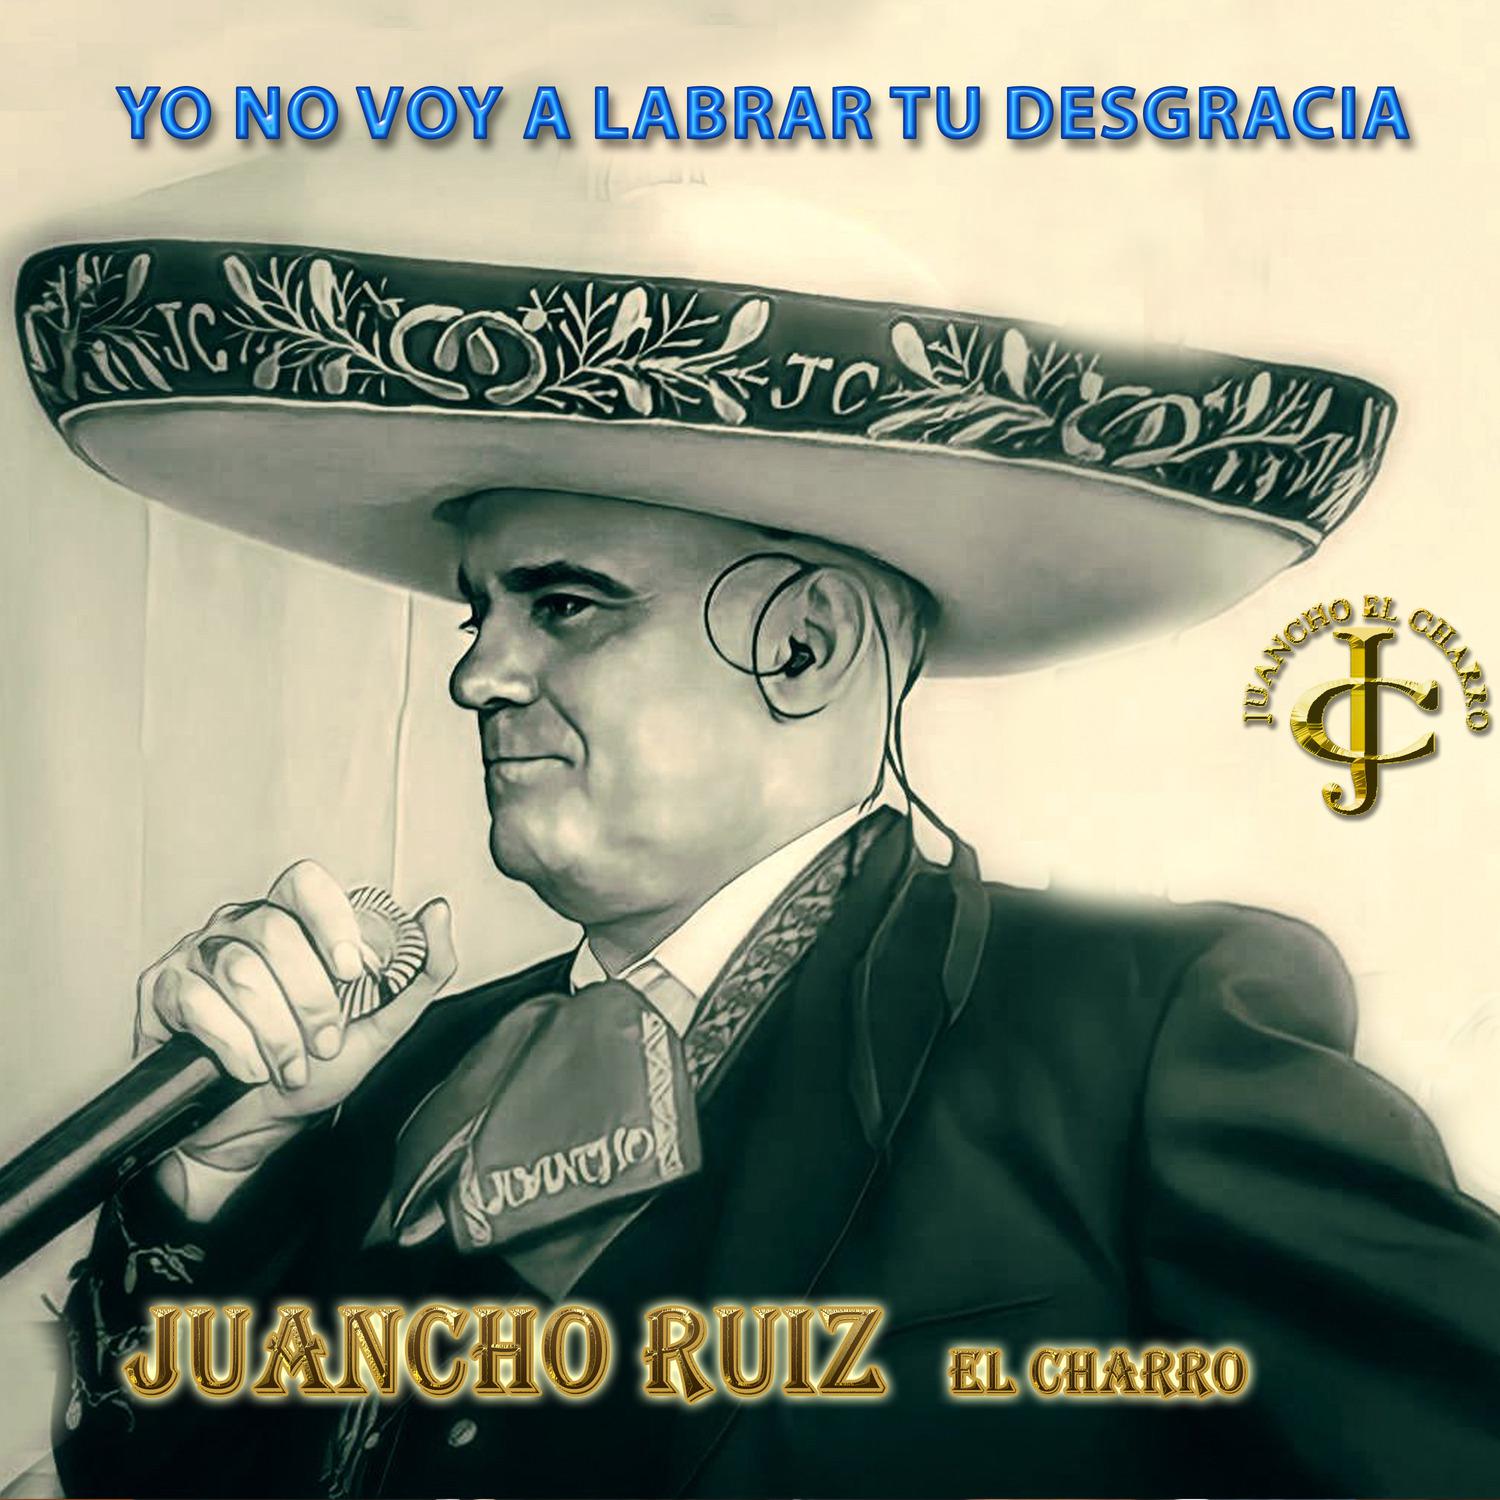 Juancho Ruiz (El Charro) - Allá en el rancho grande